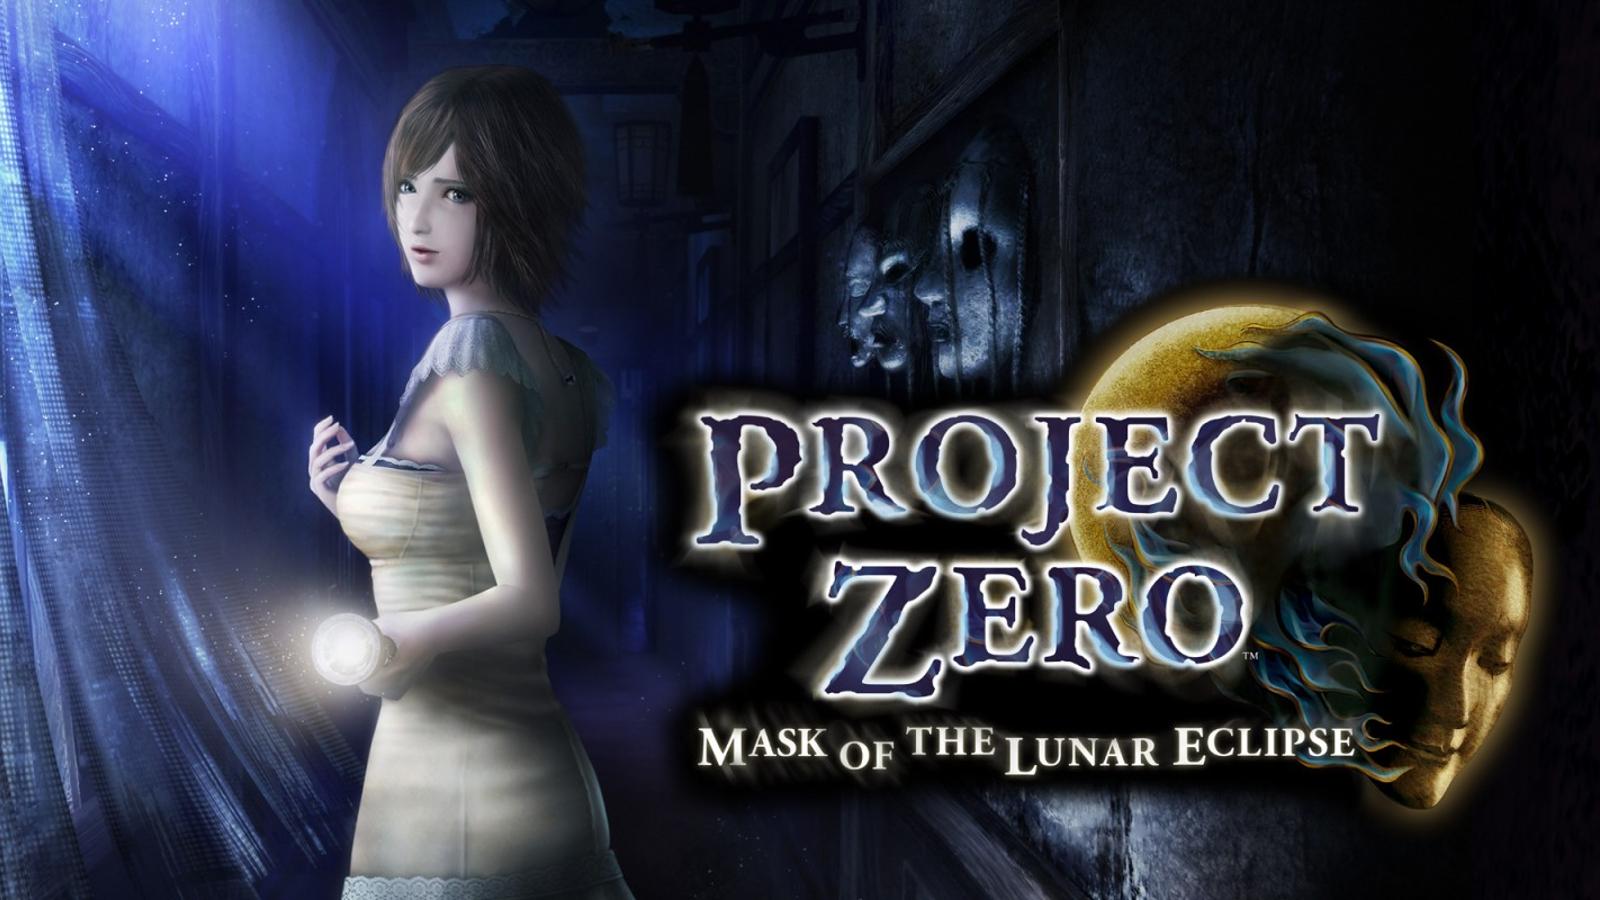 Project zero